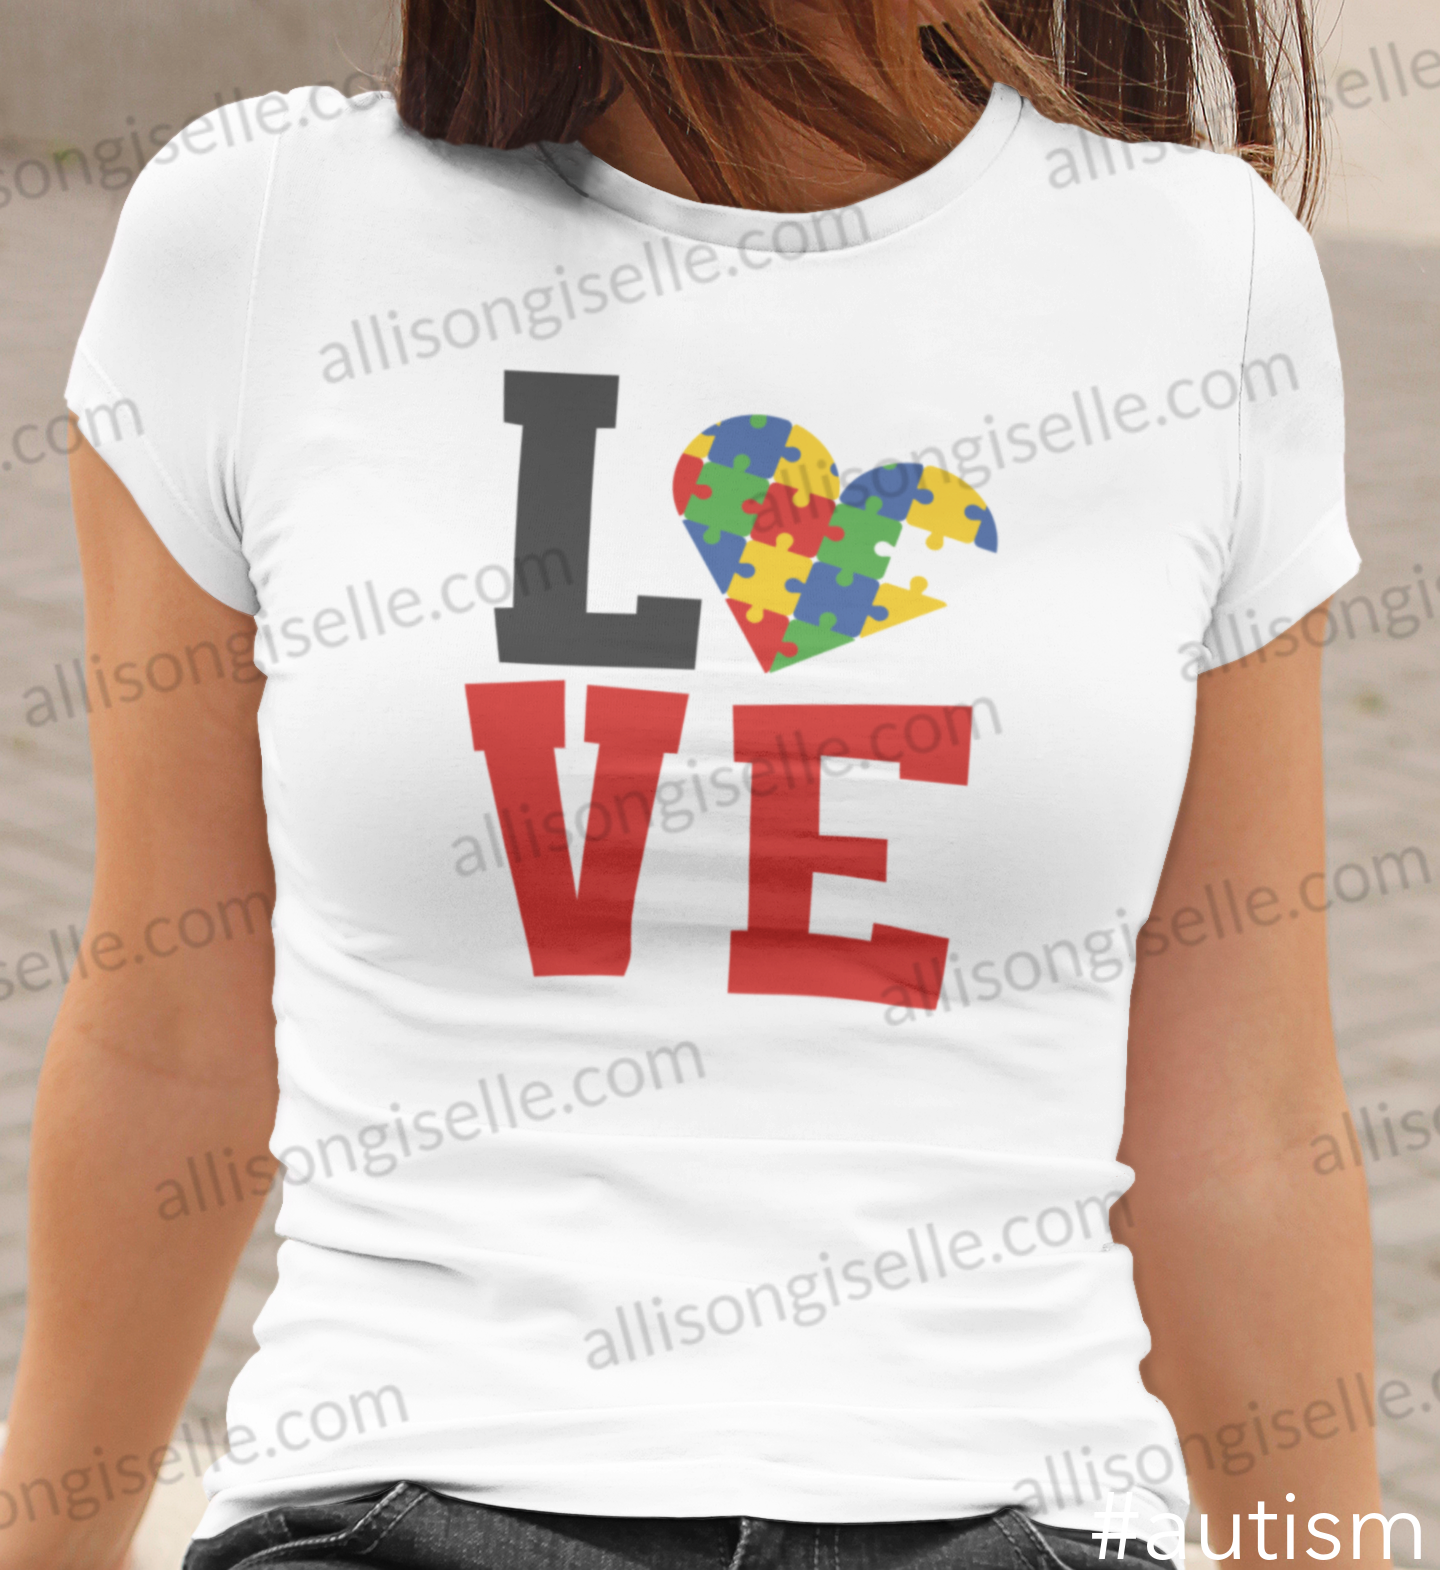 Love Autism Shirt, Adult Autism Awareness shirts, Autism Shirt Adult, Adult Autism Shirt, Autism Awareness Shirt Adult